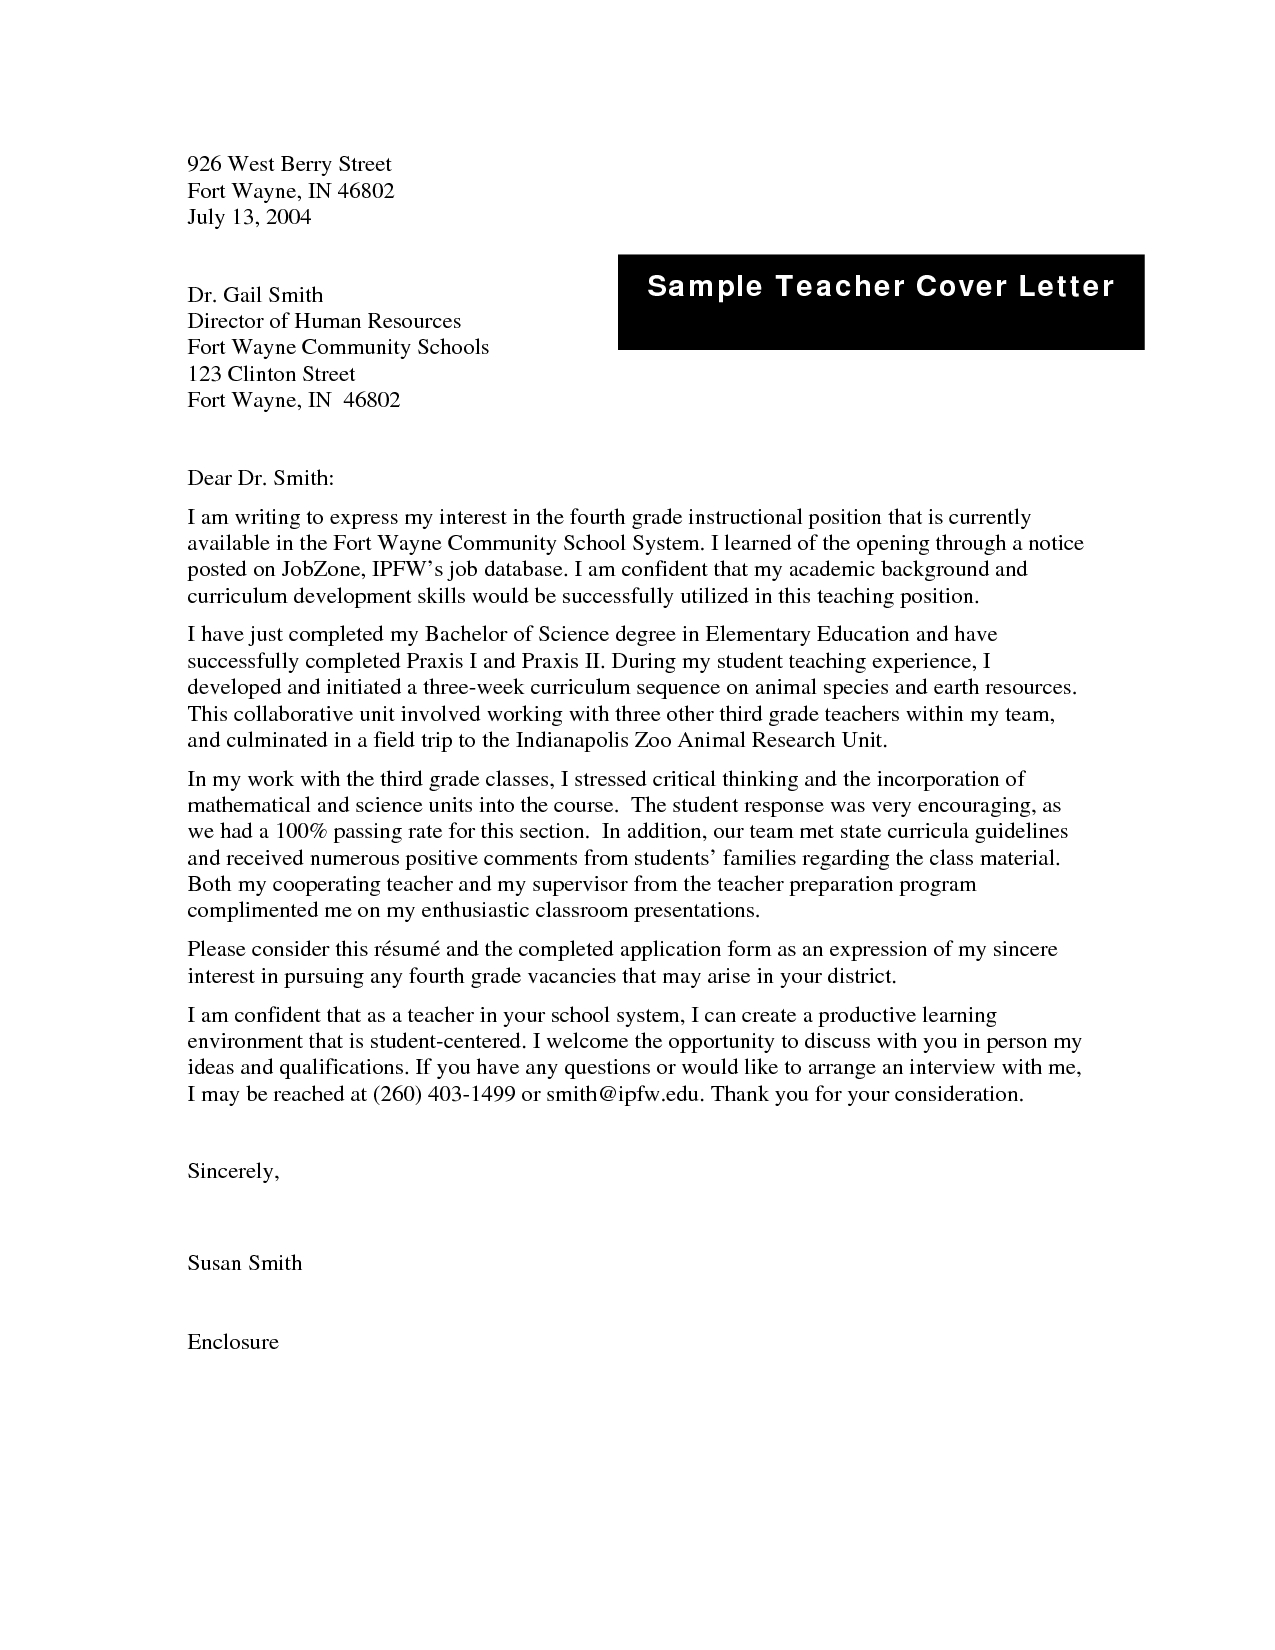 Teacher Cover Letter Example Job Letter Of Teacher Sample Teacher Cover Letter Teaching Cover